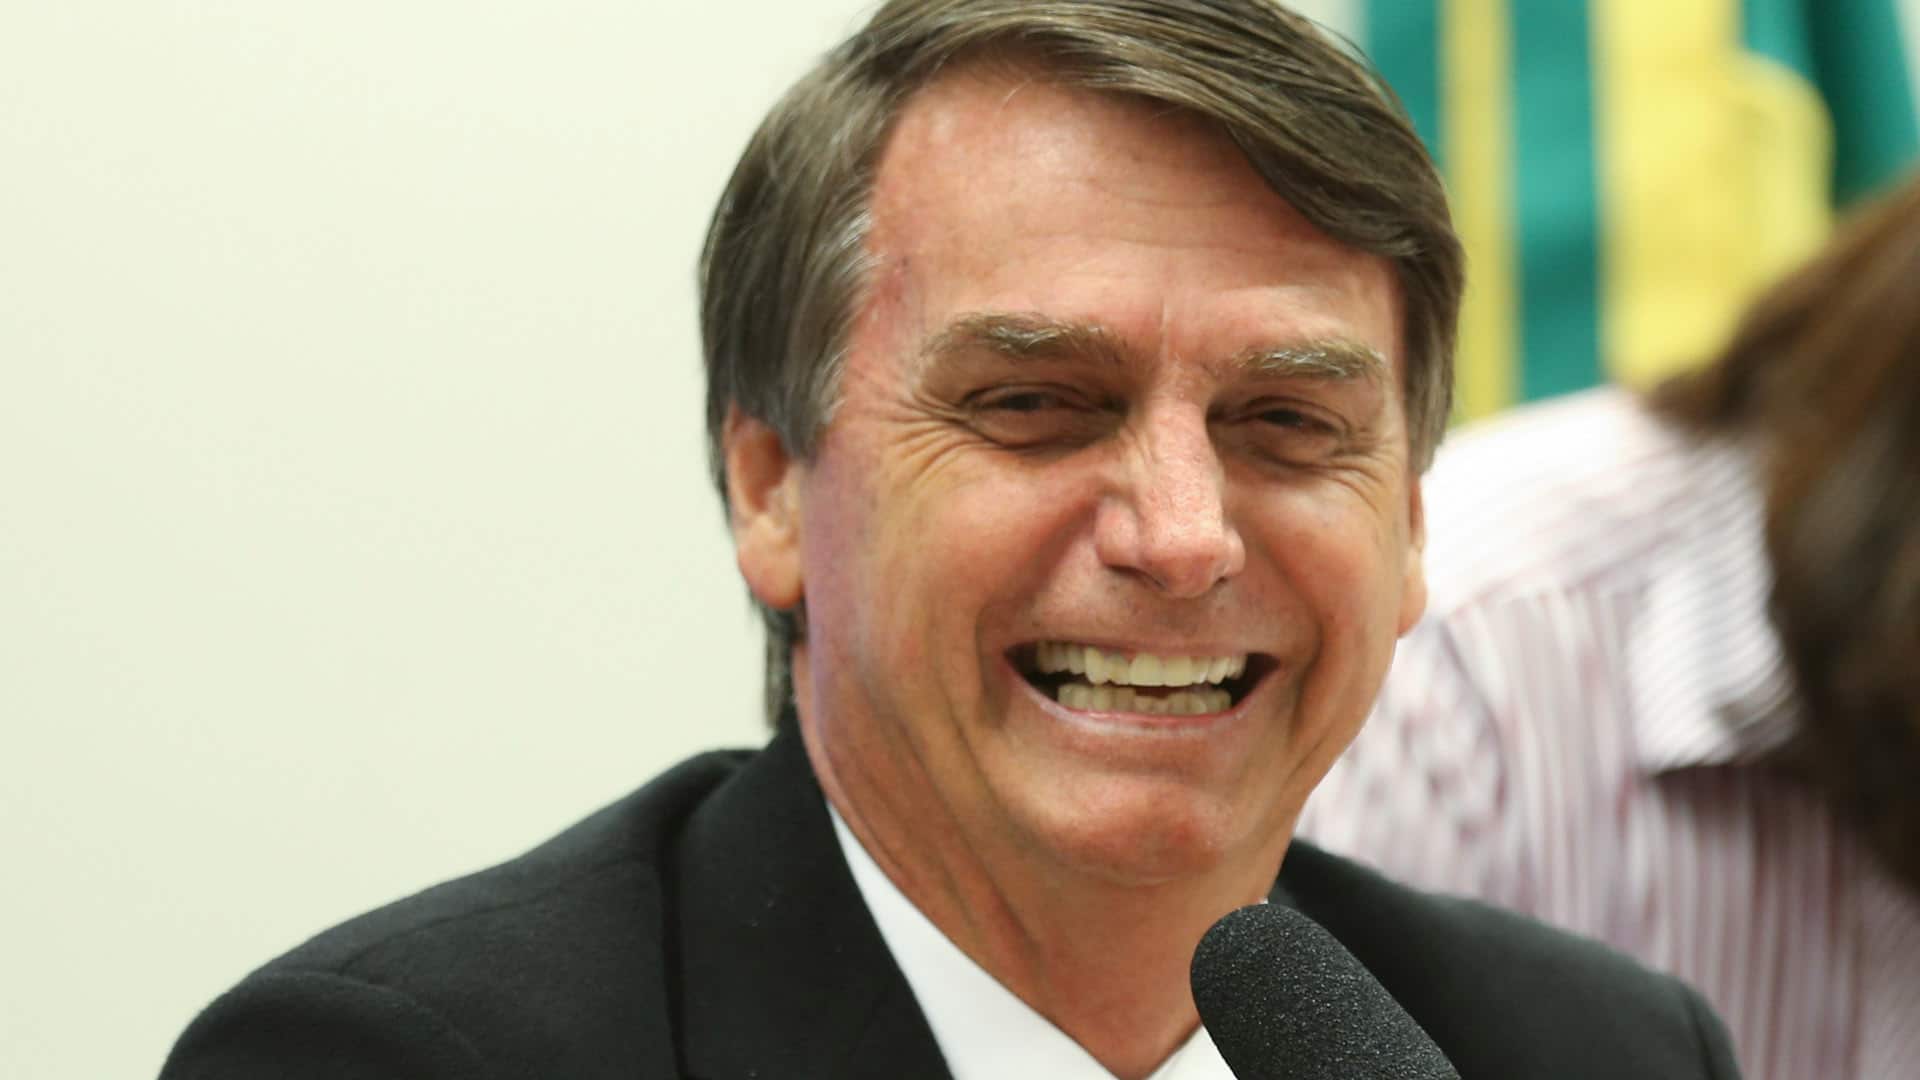 Der rechts-konservative Jair Bolsonaro ist seit Januar 2019 der Präsident Brasiliens und beliebt bei evangelikalen Christen in dem Land